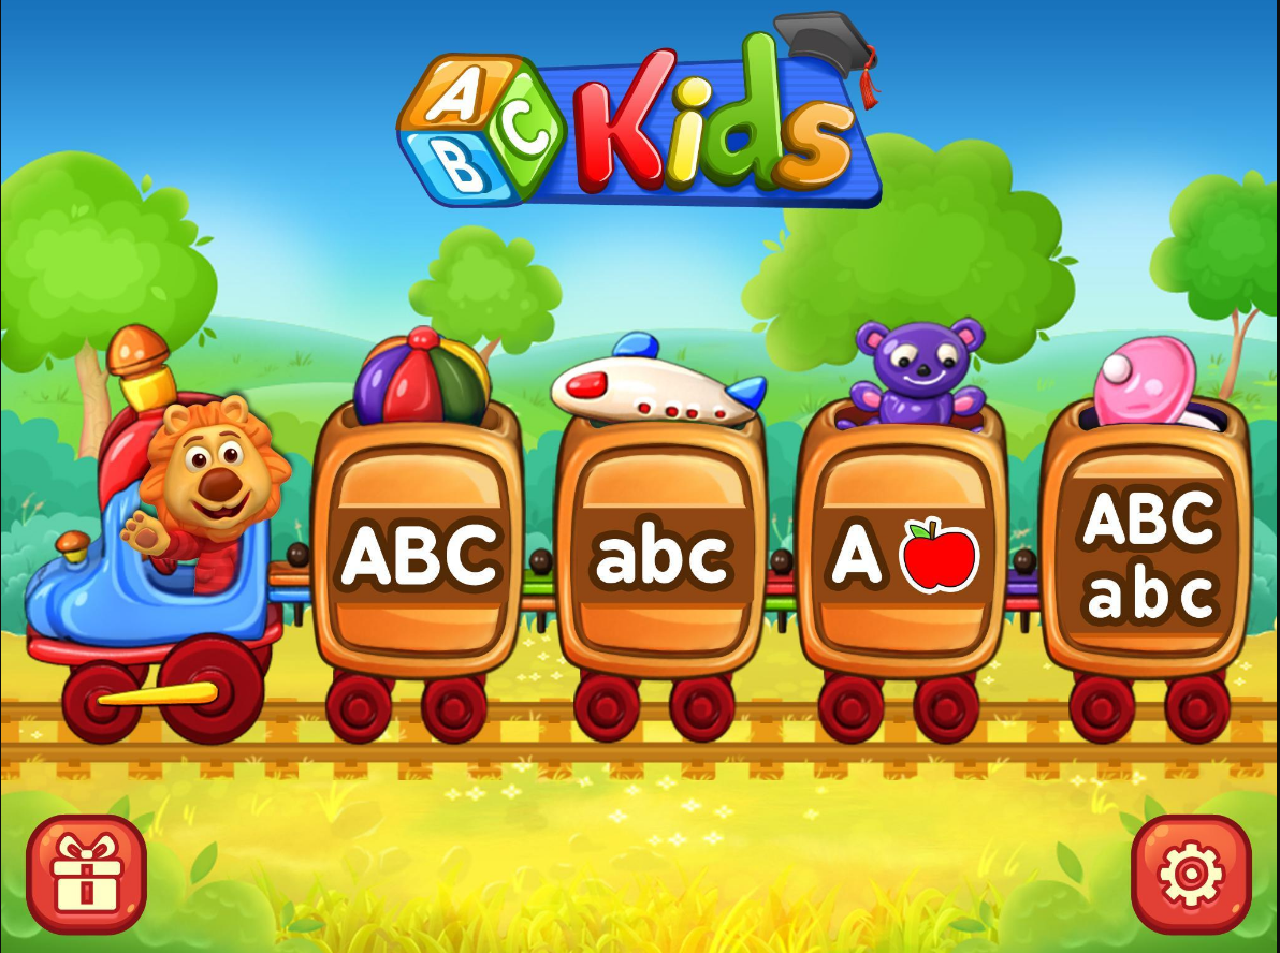 Mục đích của ABC Kids chính là giúp trẻ em có thể nhận biết, nhớ cũng như viết được các chữ trong bảng chữ cái